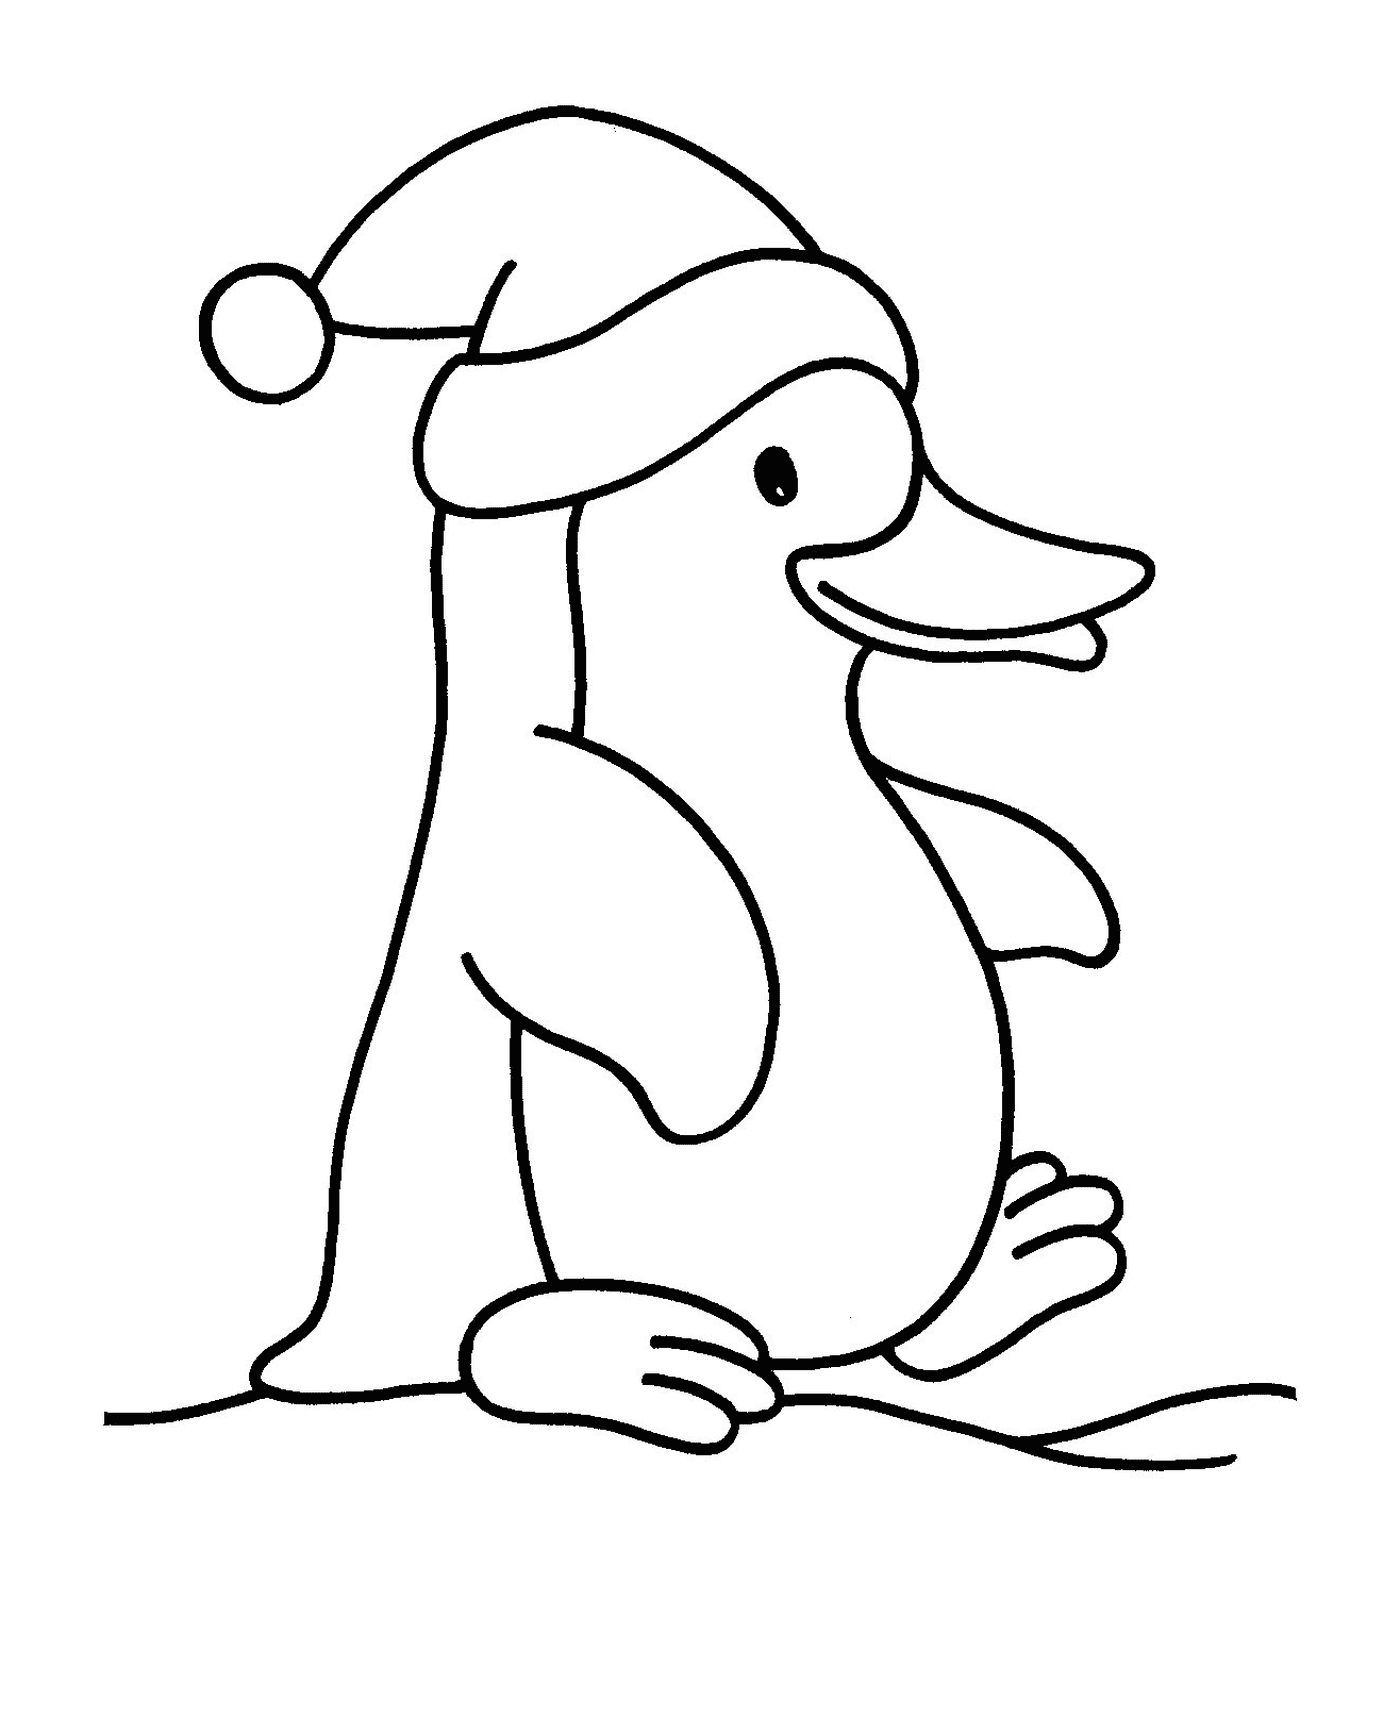  迷人的圣诞企鹅 